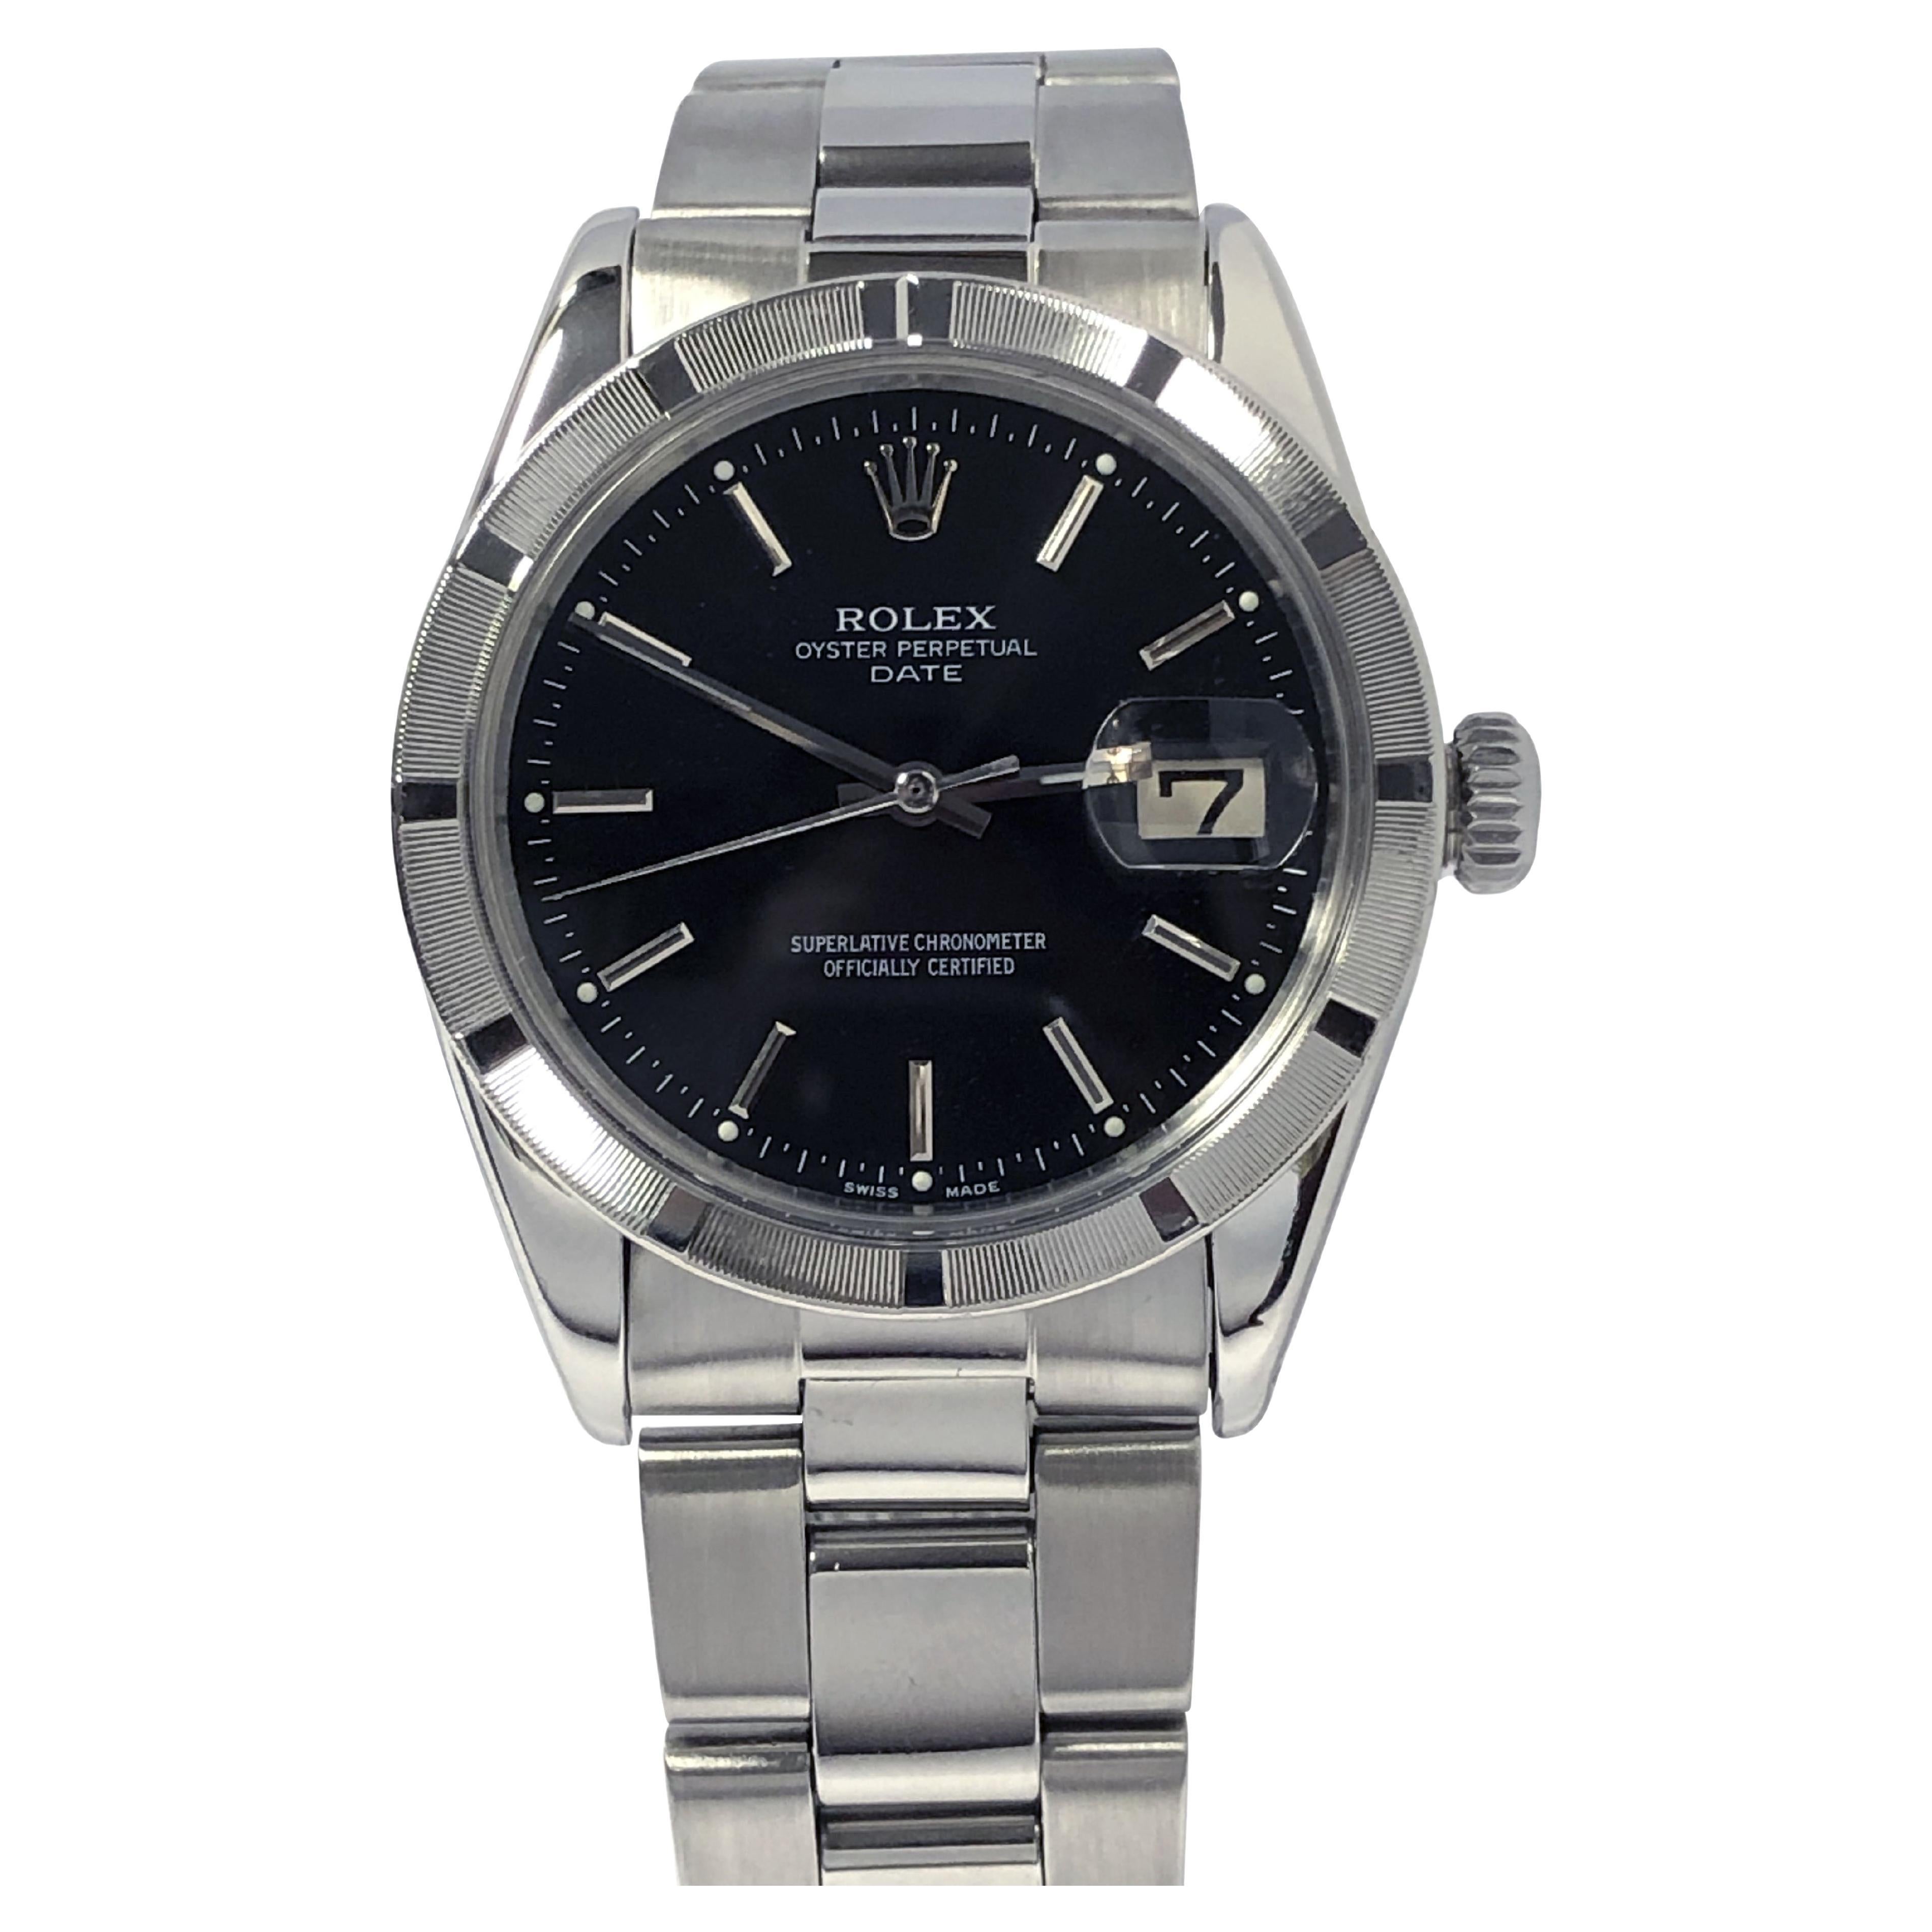 Rolex Vintage Steel Date Model 1501 Black Dial Wrist Watch